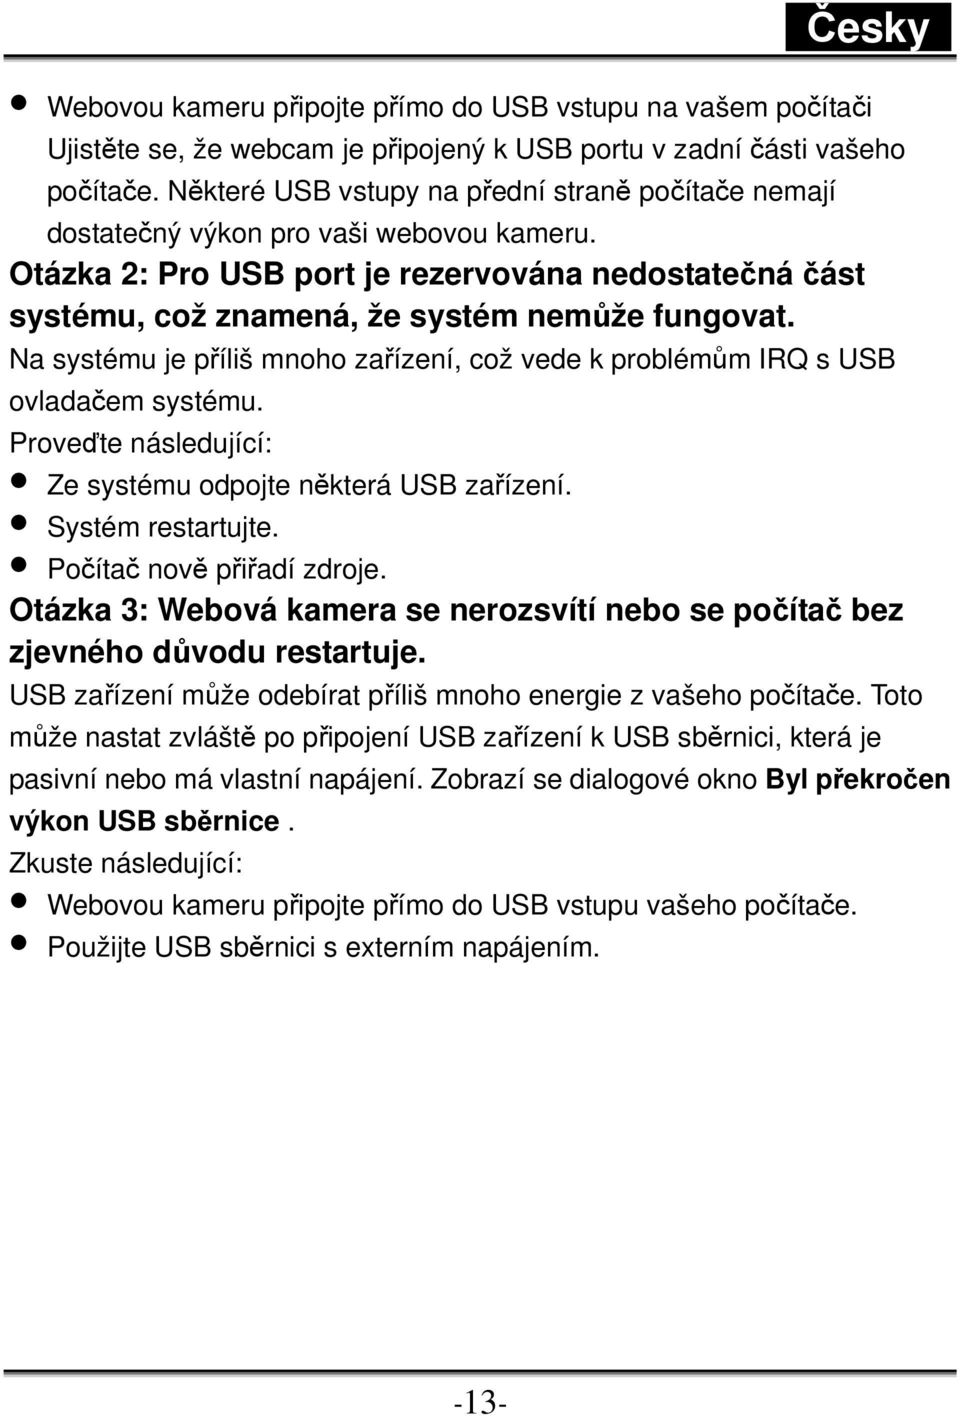 Na systému je příliš mnoho zařízení, což vede k problémům IRQ s USB ovladačem systému. Proveďte následující: Ze systému odpojte některá USB zařízení. Systém restartujte. Počítač nově přiřadí zdroje.